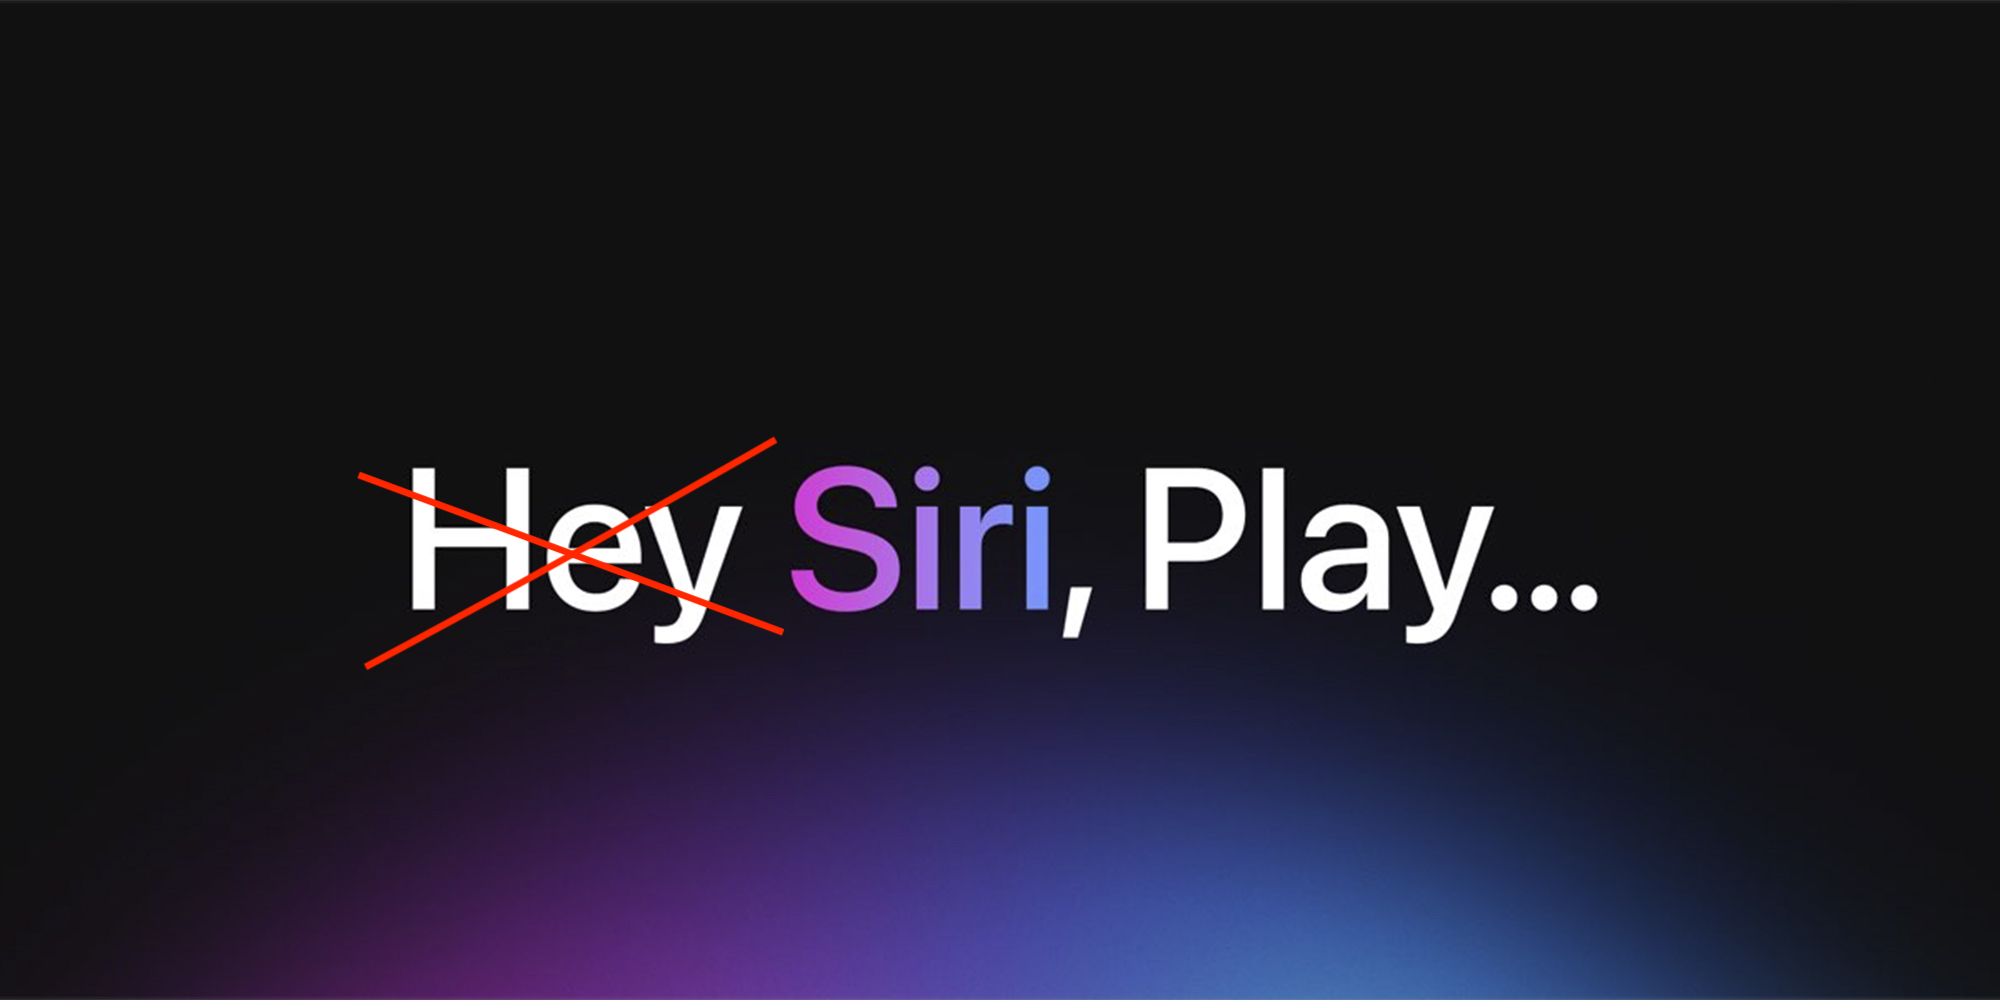 أبل تريد تغيير أمر التشغيل "Hey Siri" إلى "Siri" فقط